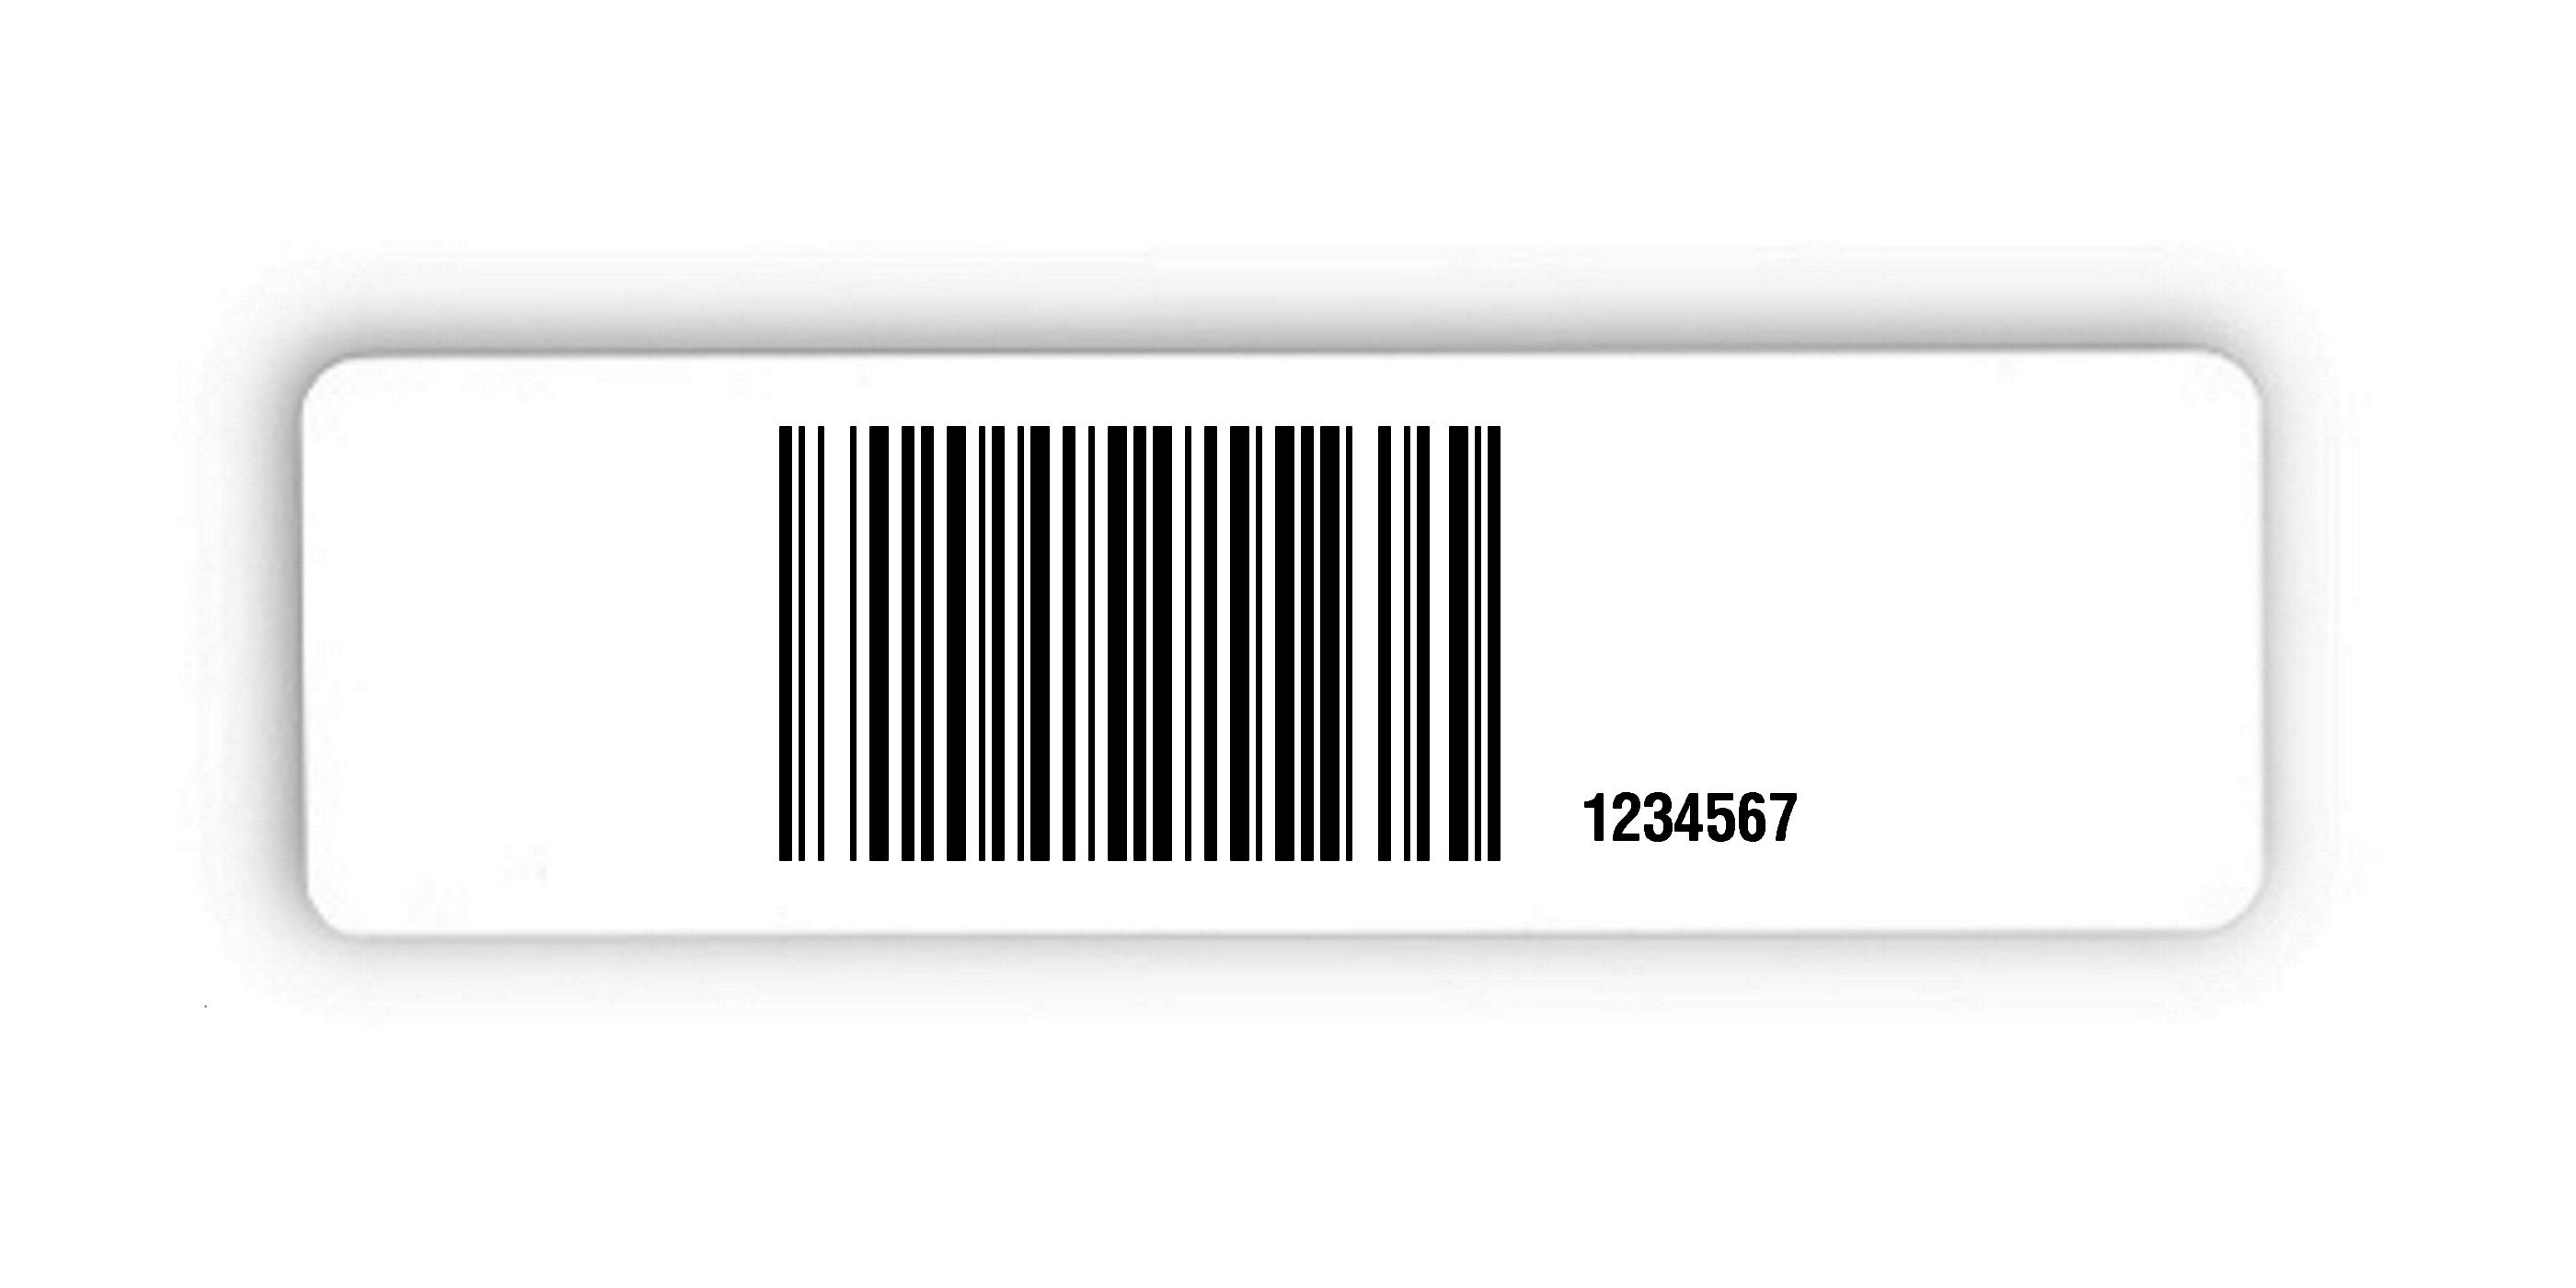 Universaletiketten Material:Polyethylen-Folie hochglänzend weiß Größe:150x50mm Kopfzeile:"ohne" Barcode:128B Stellenanzahl:7-stellig Ausführung:1 Etikette pro Nummer Menge:100